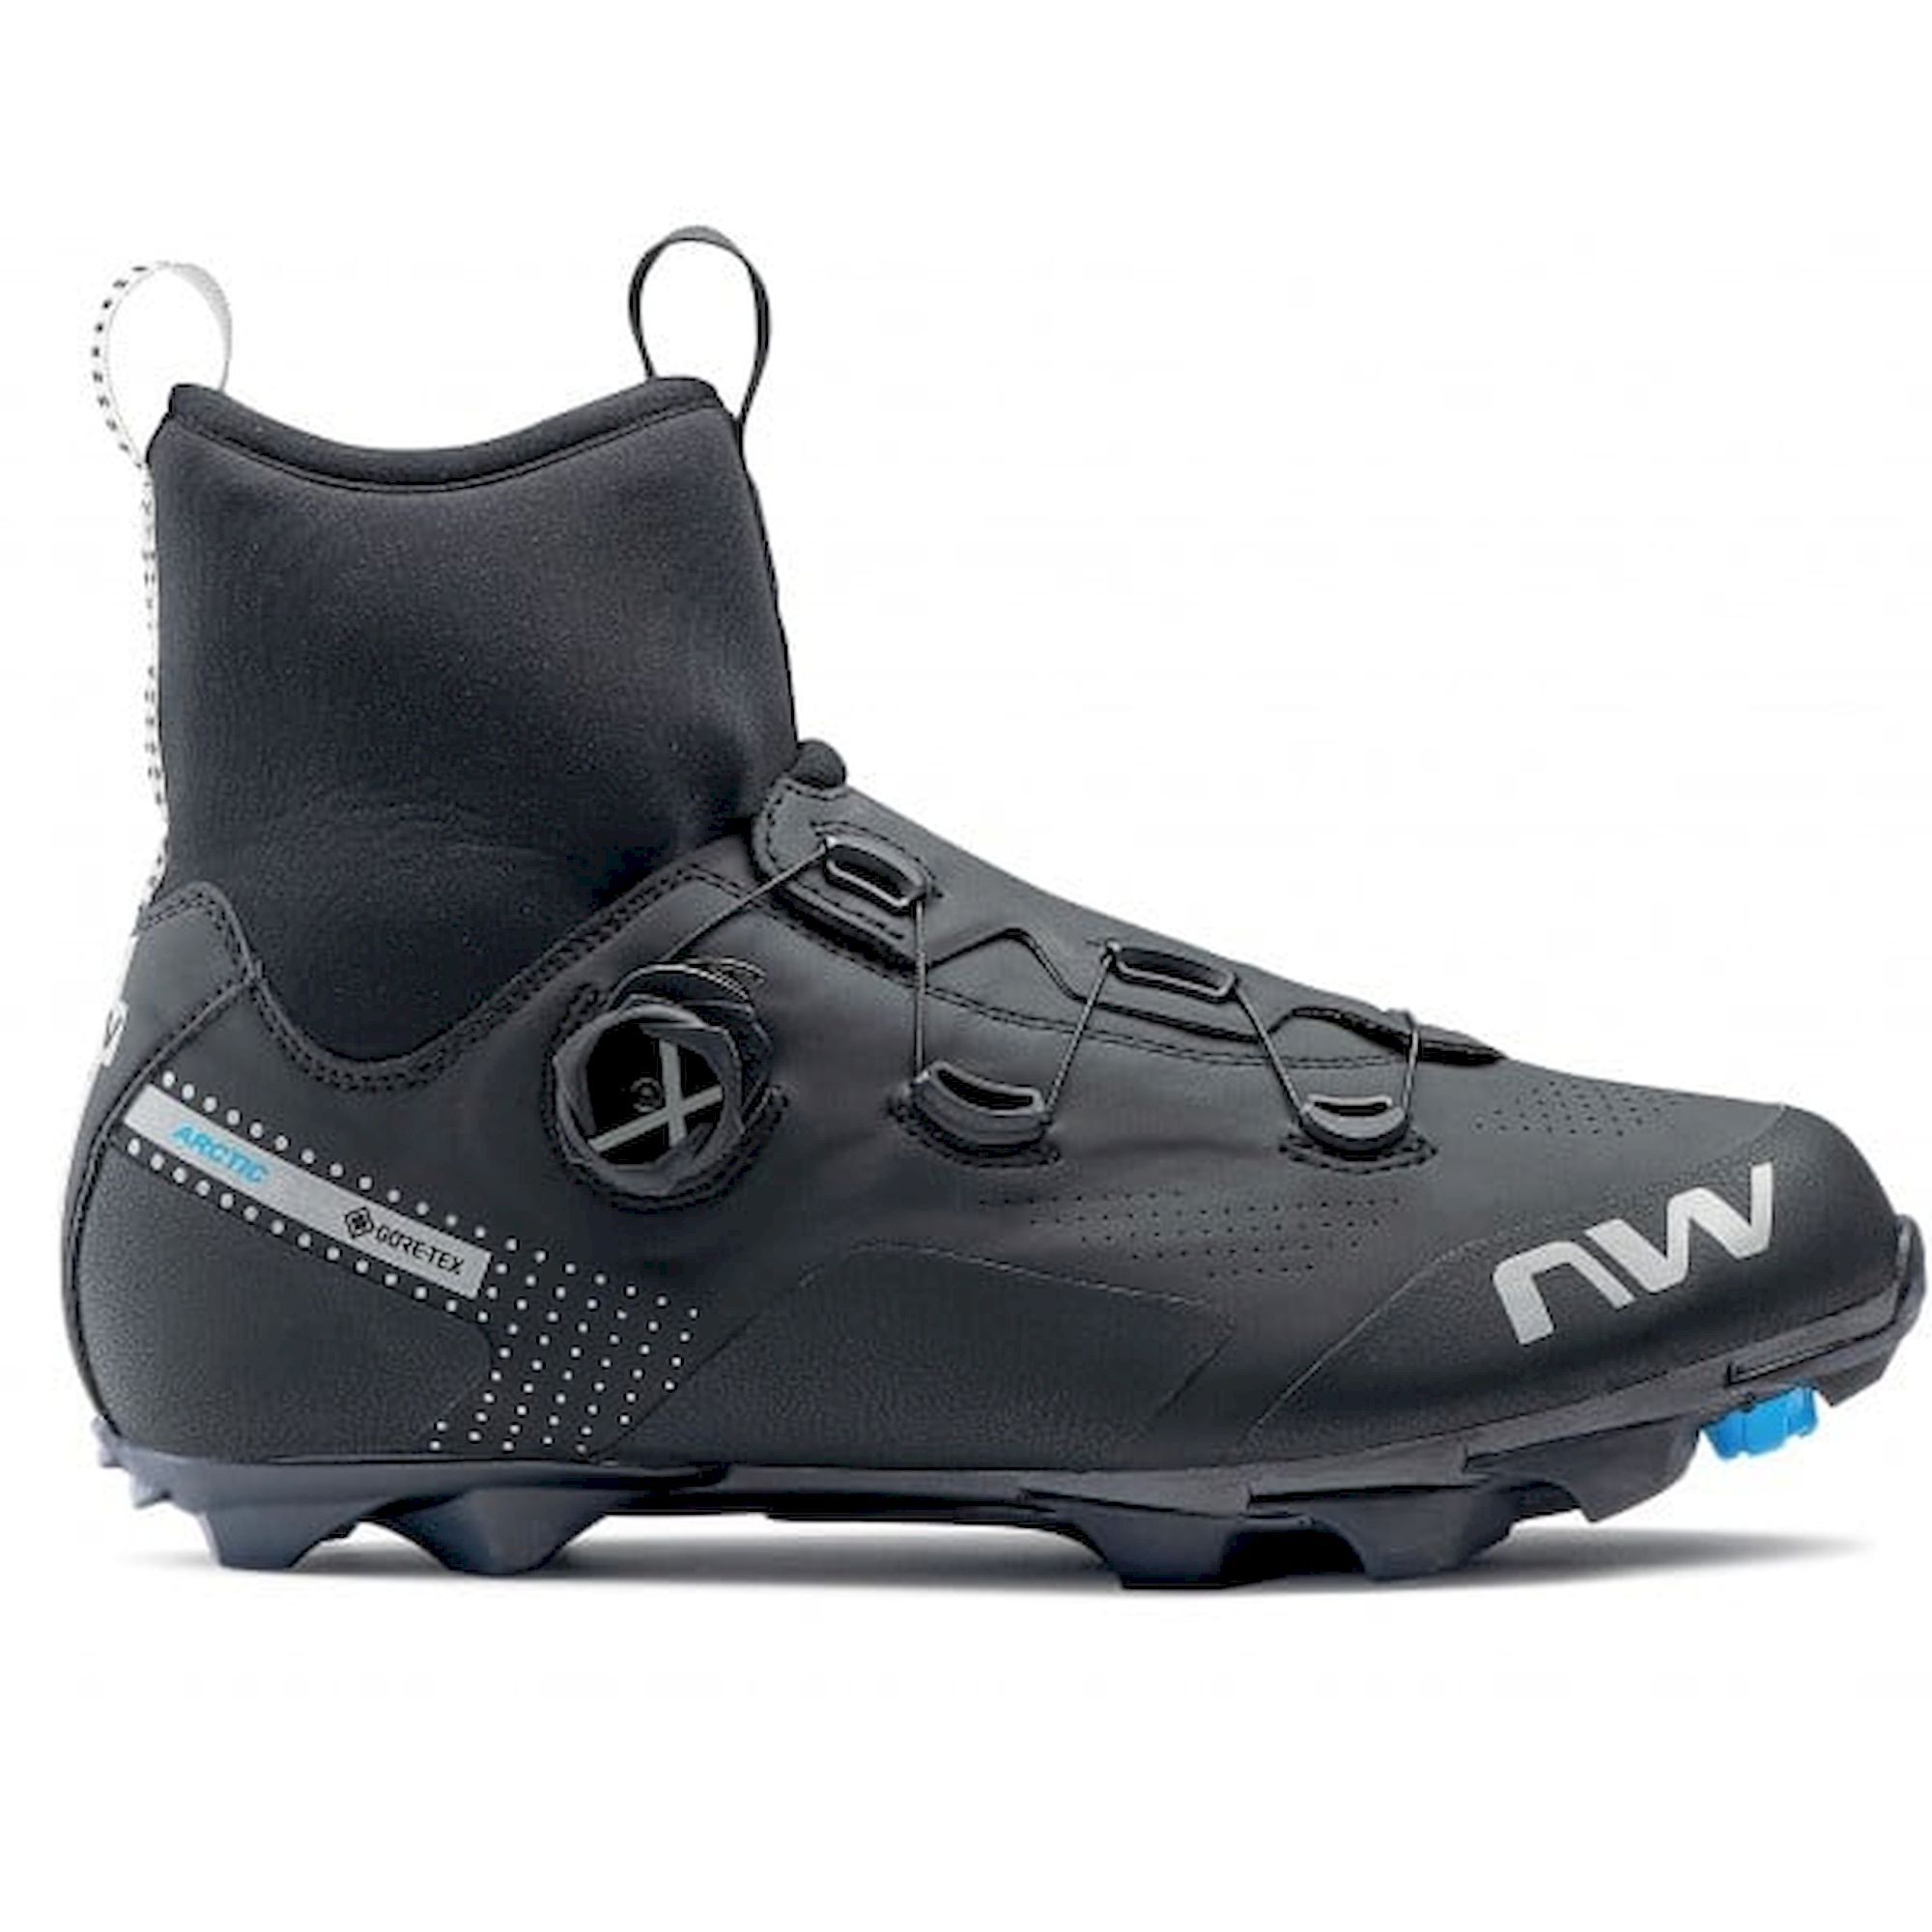 Northwave Celsius XC GTX - Mountain Bike shoes - Men's